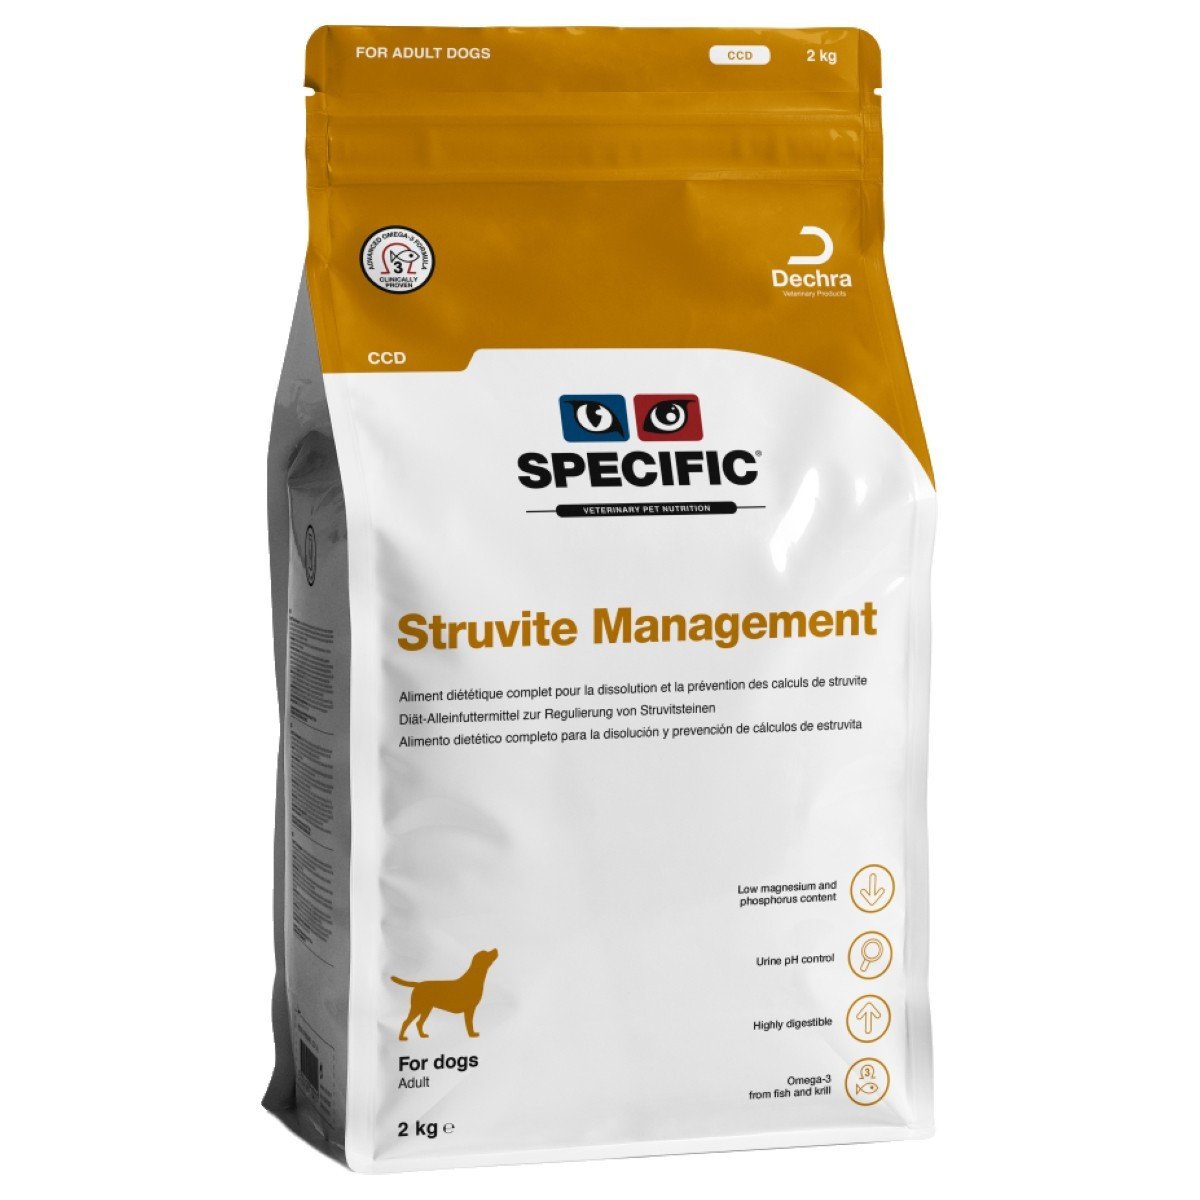 Dechra Specific CCD Struvite Management Dog Food